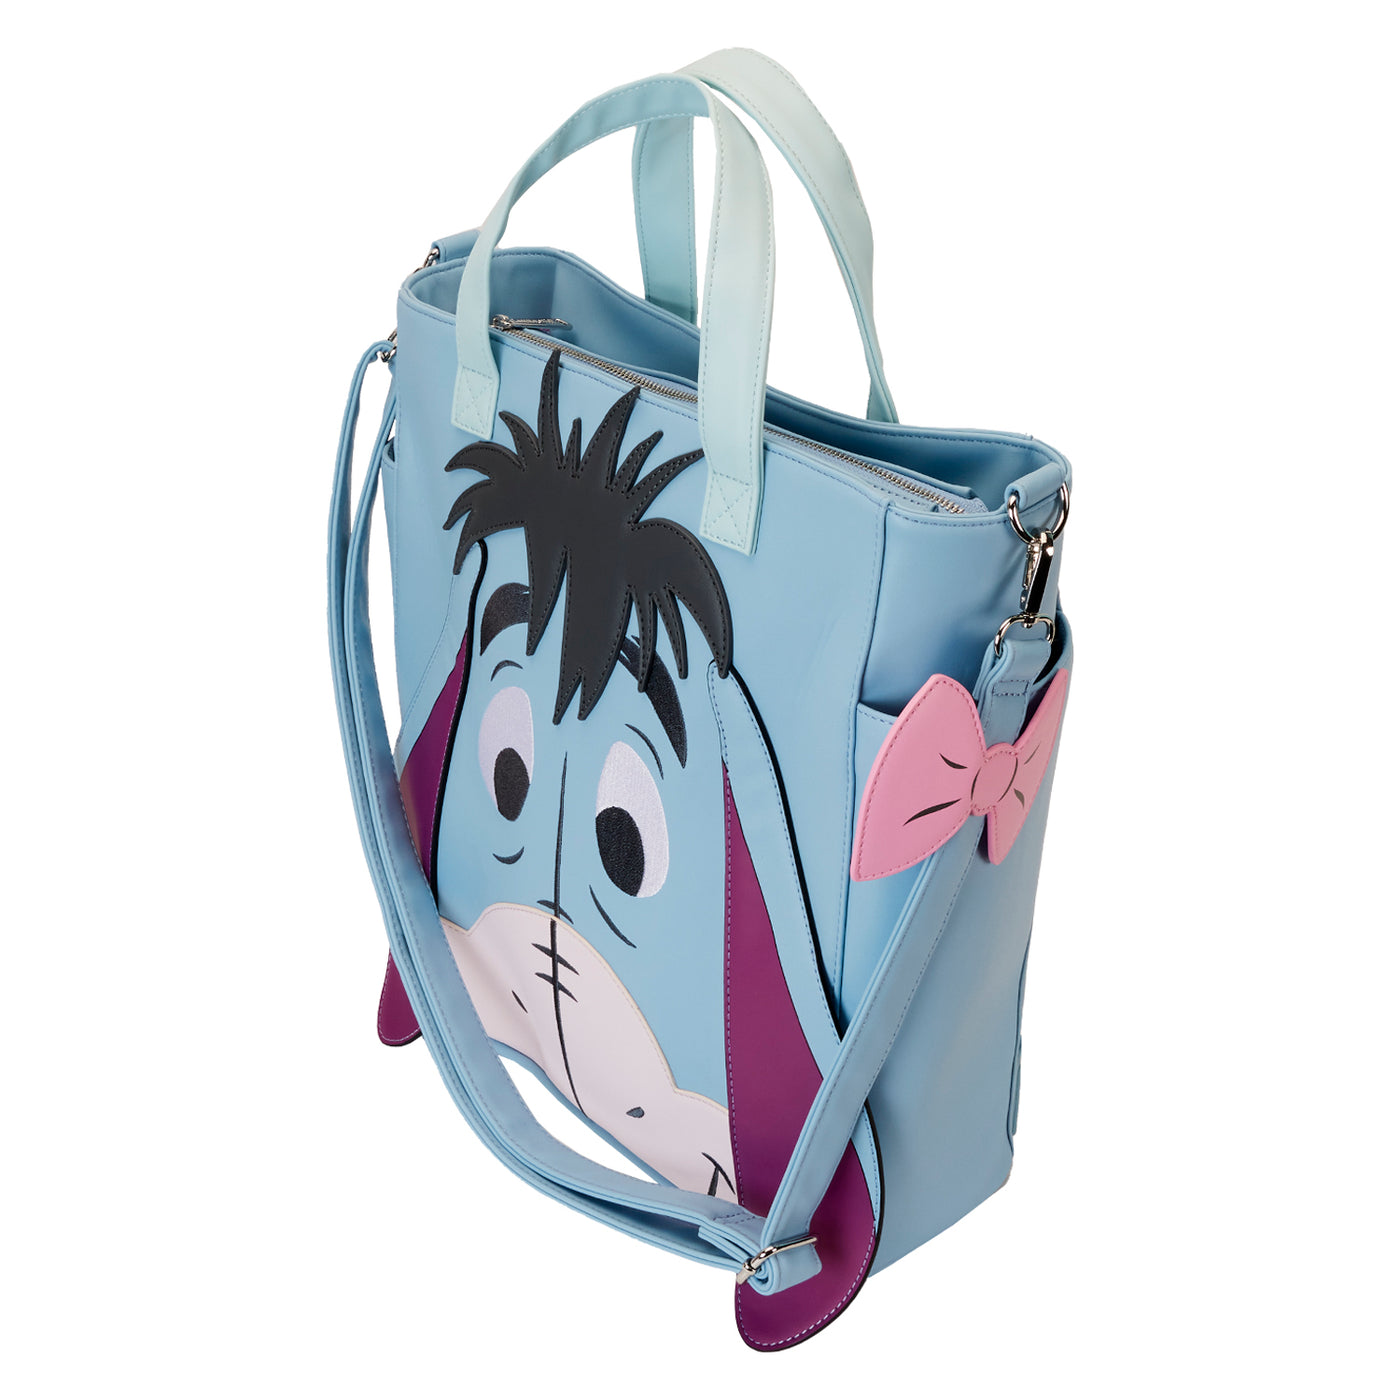 Disney Winnie the Pooh Eeyore Convertible Tote Bag